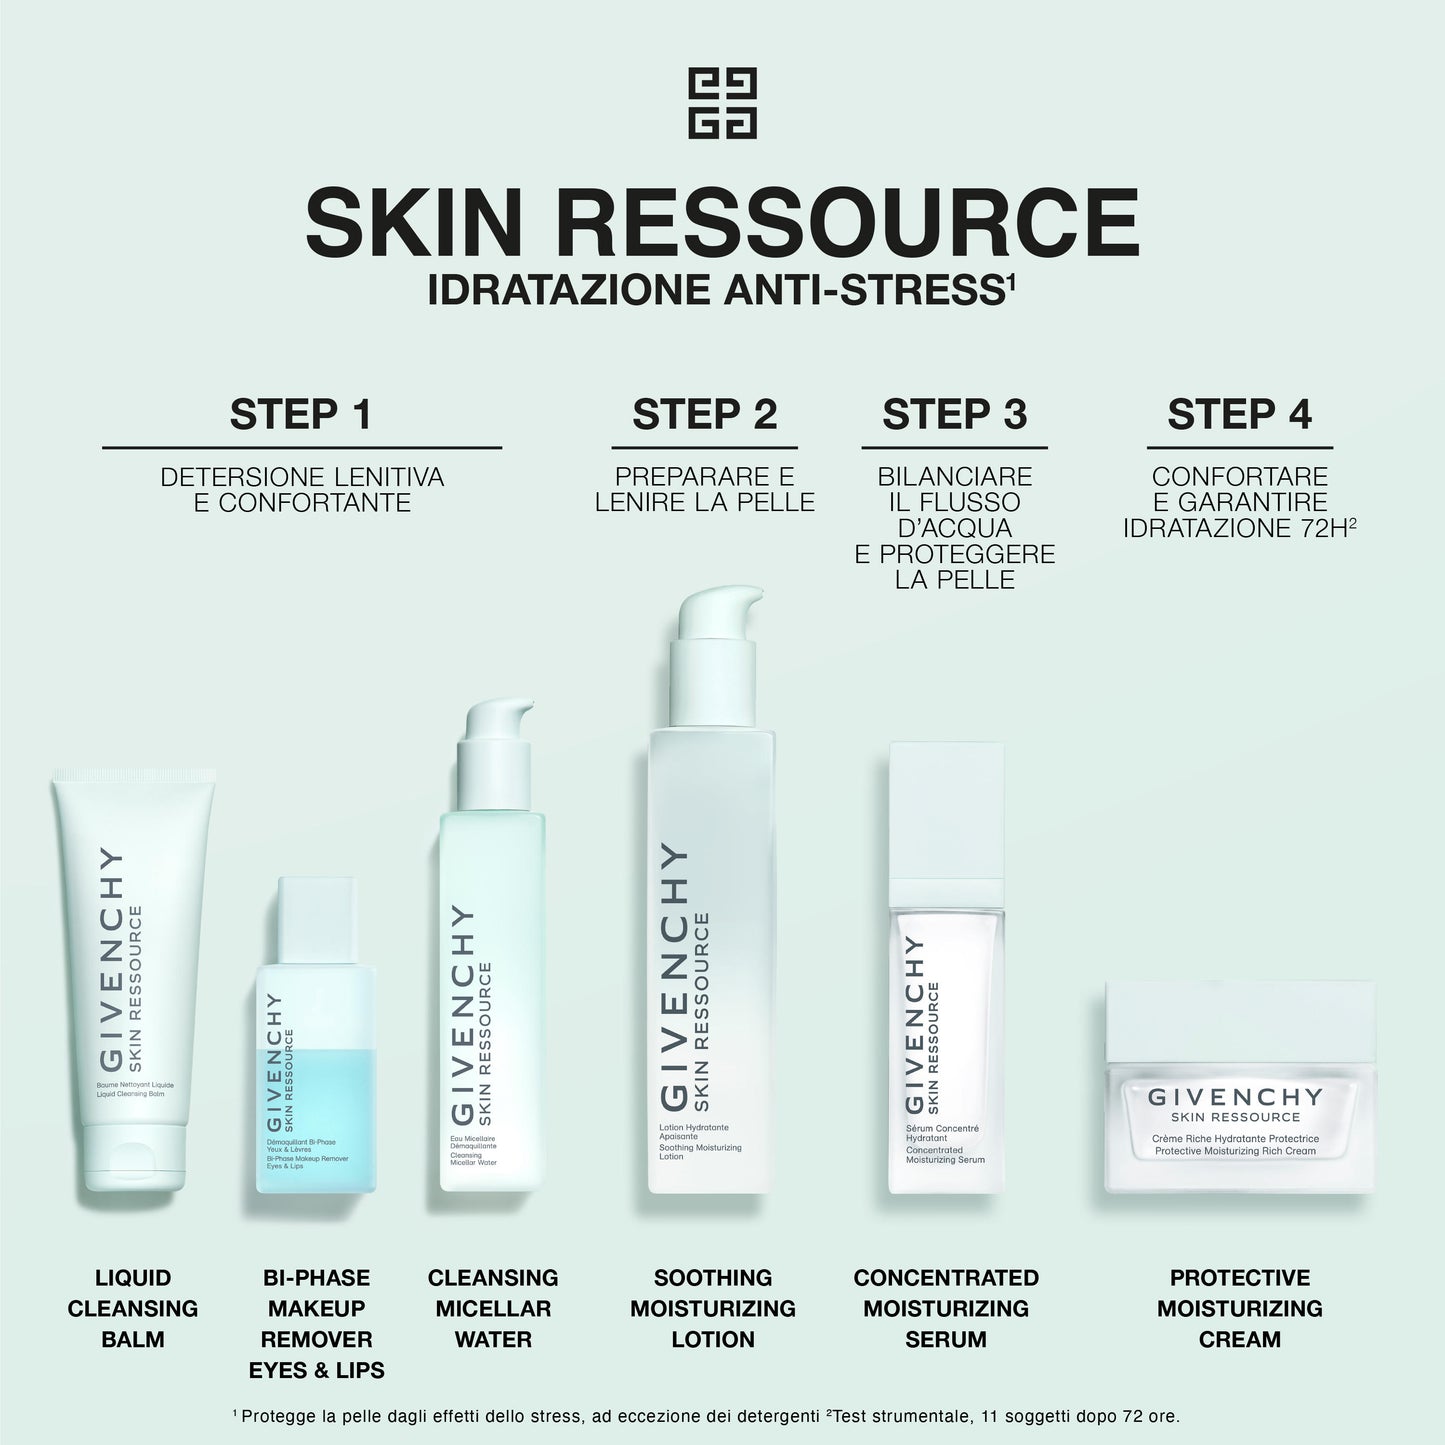 Skin Ressource Rich Cream Protettiva Idratante Step 4